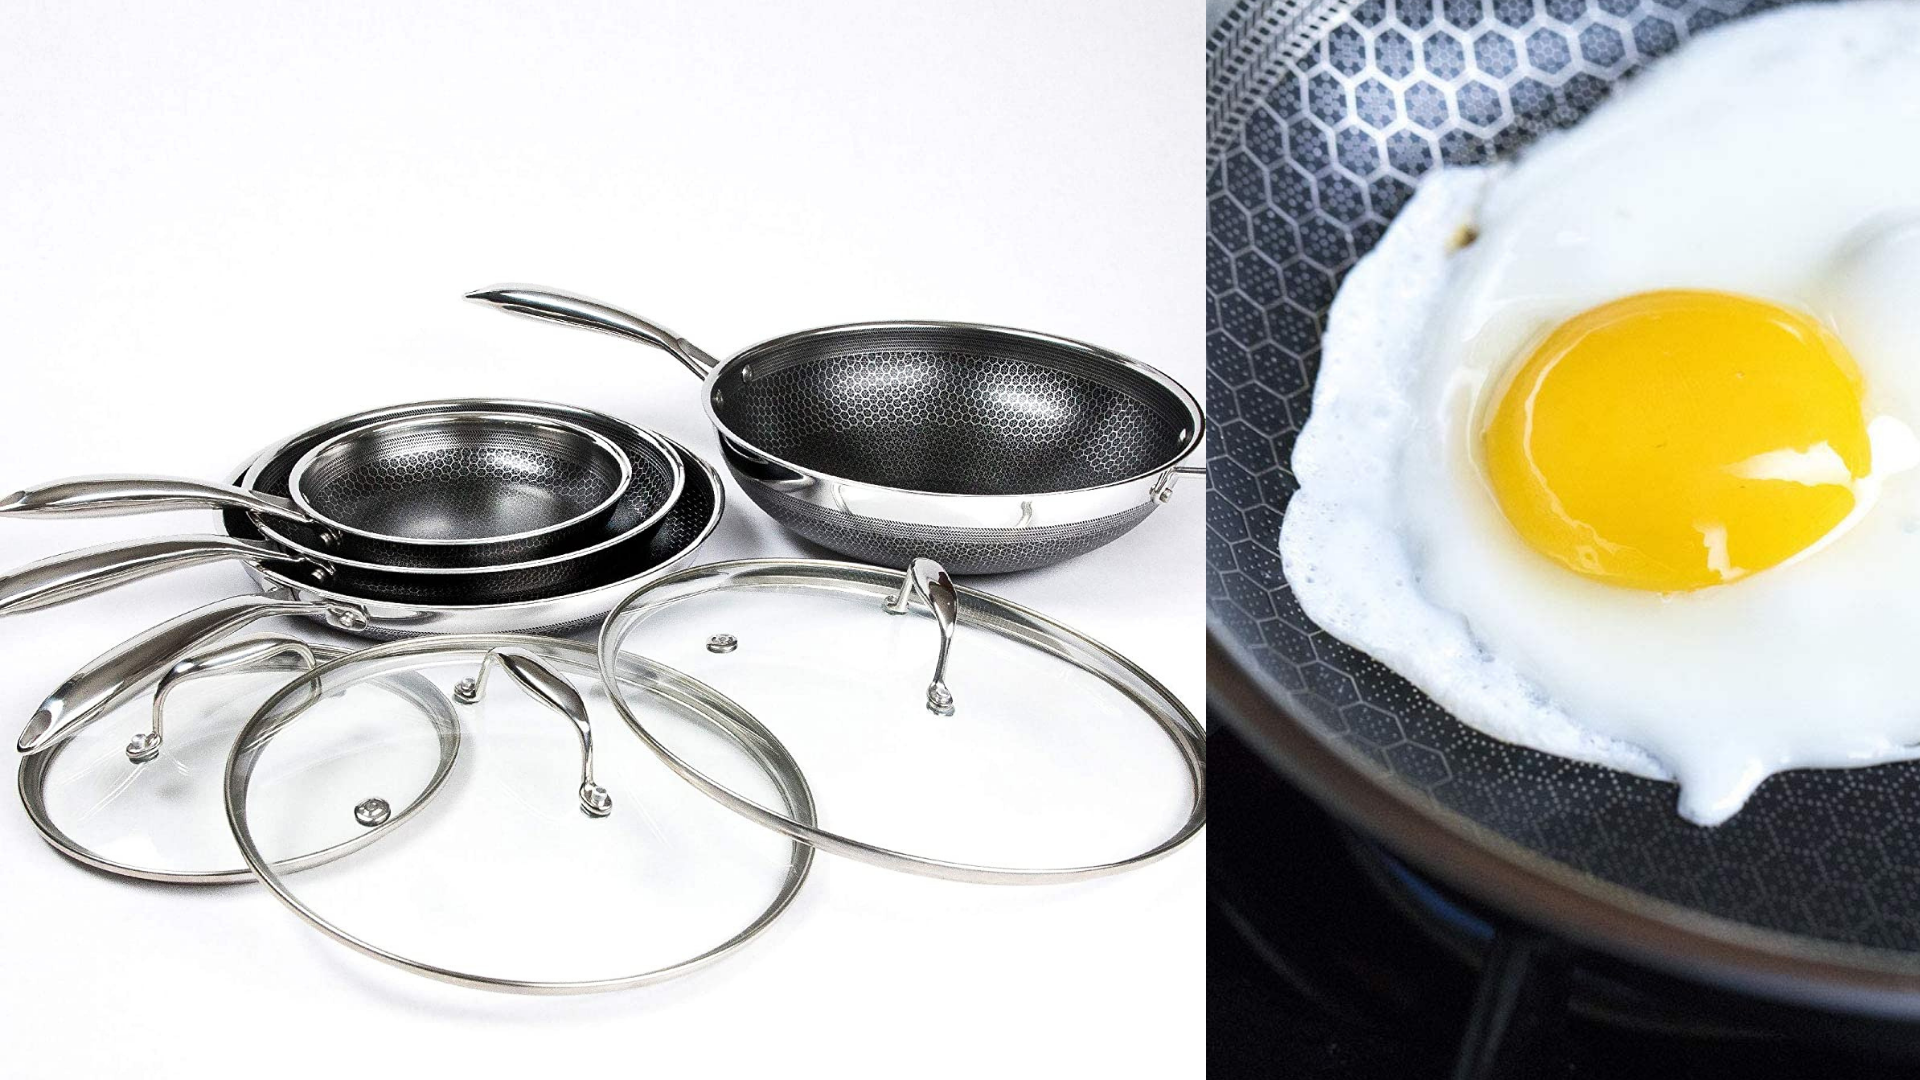 Hexclad Hybrid Nonstick Cookware 6 Piece Pot Set with Lids, Metal